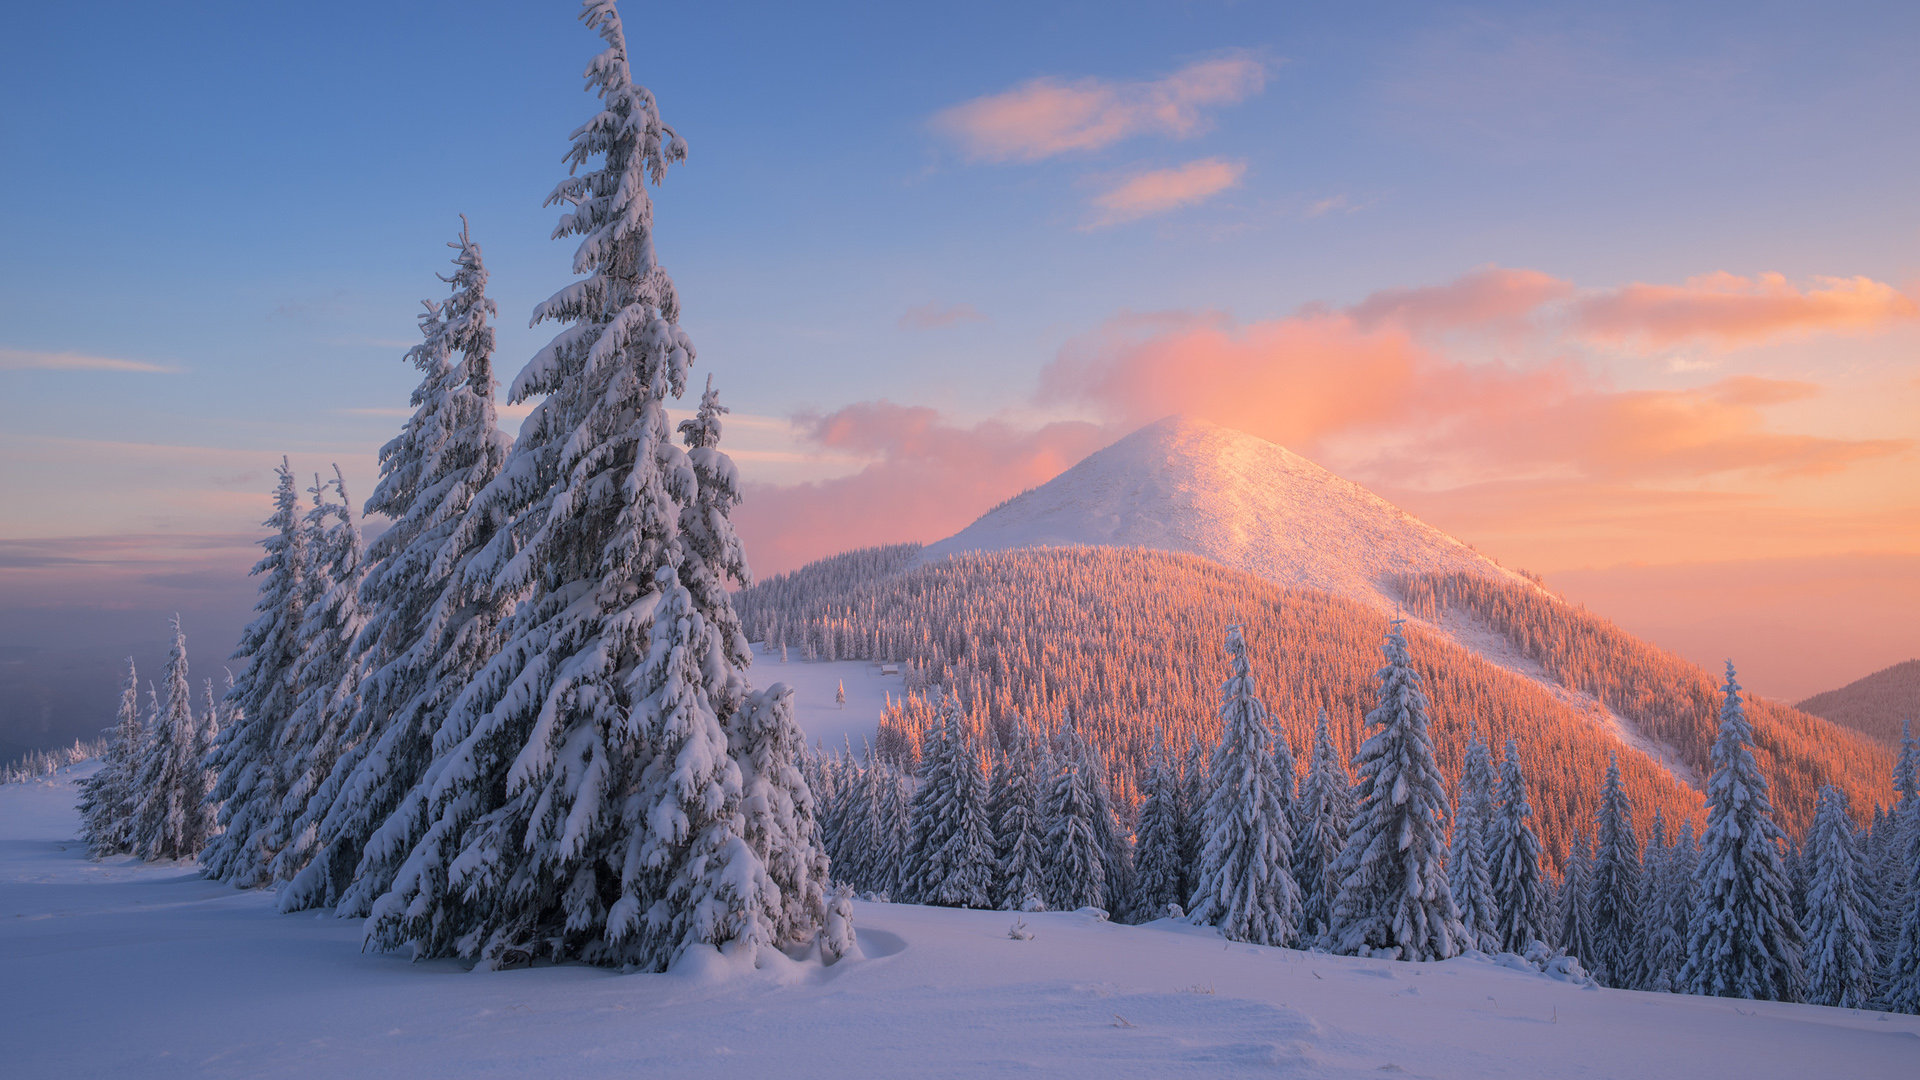 冬天,雪,树,自然风景桌面壁纸